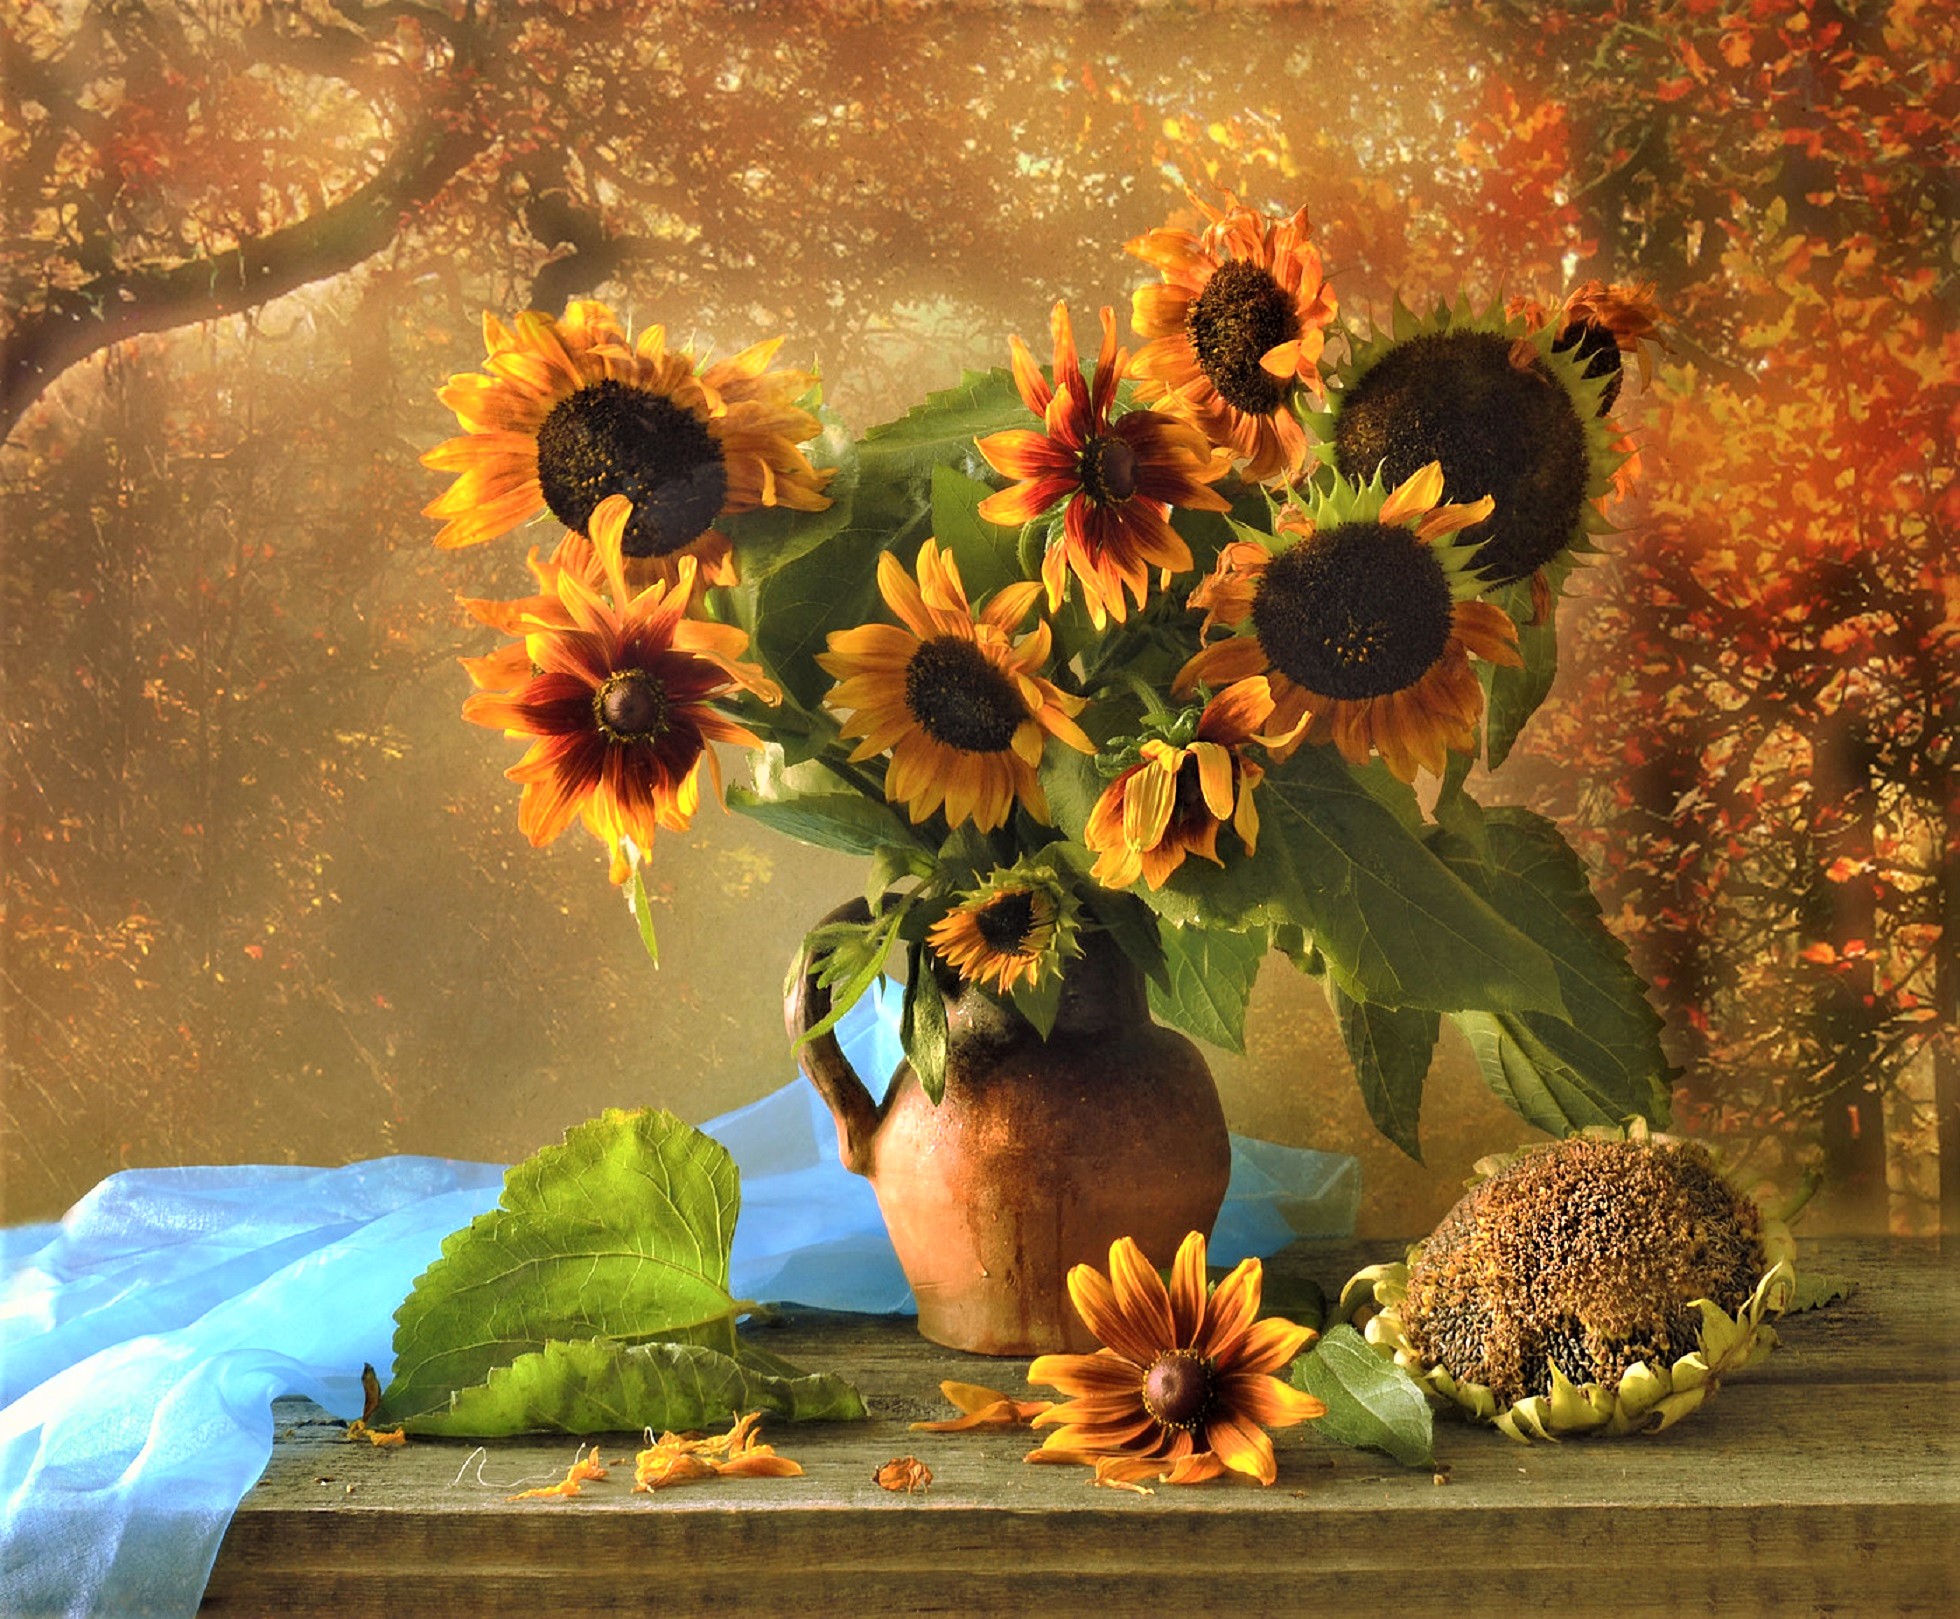 906262 免費下載壁紙 摄影, 静物, 秋季, 投手, 向日葵, 花瓶, 黄花 屏保和圖片